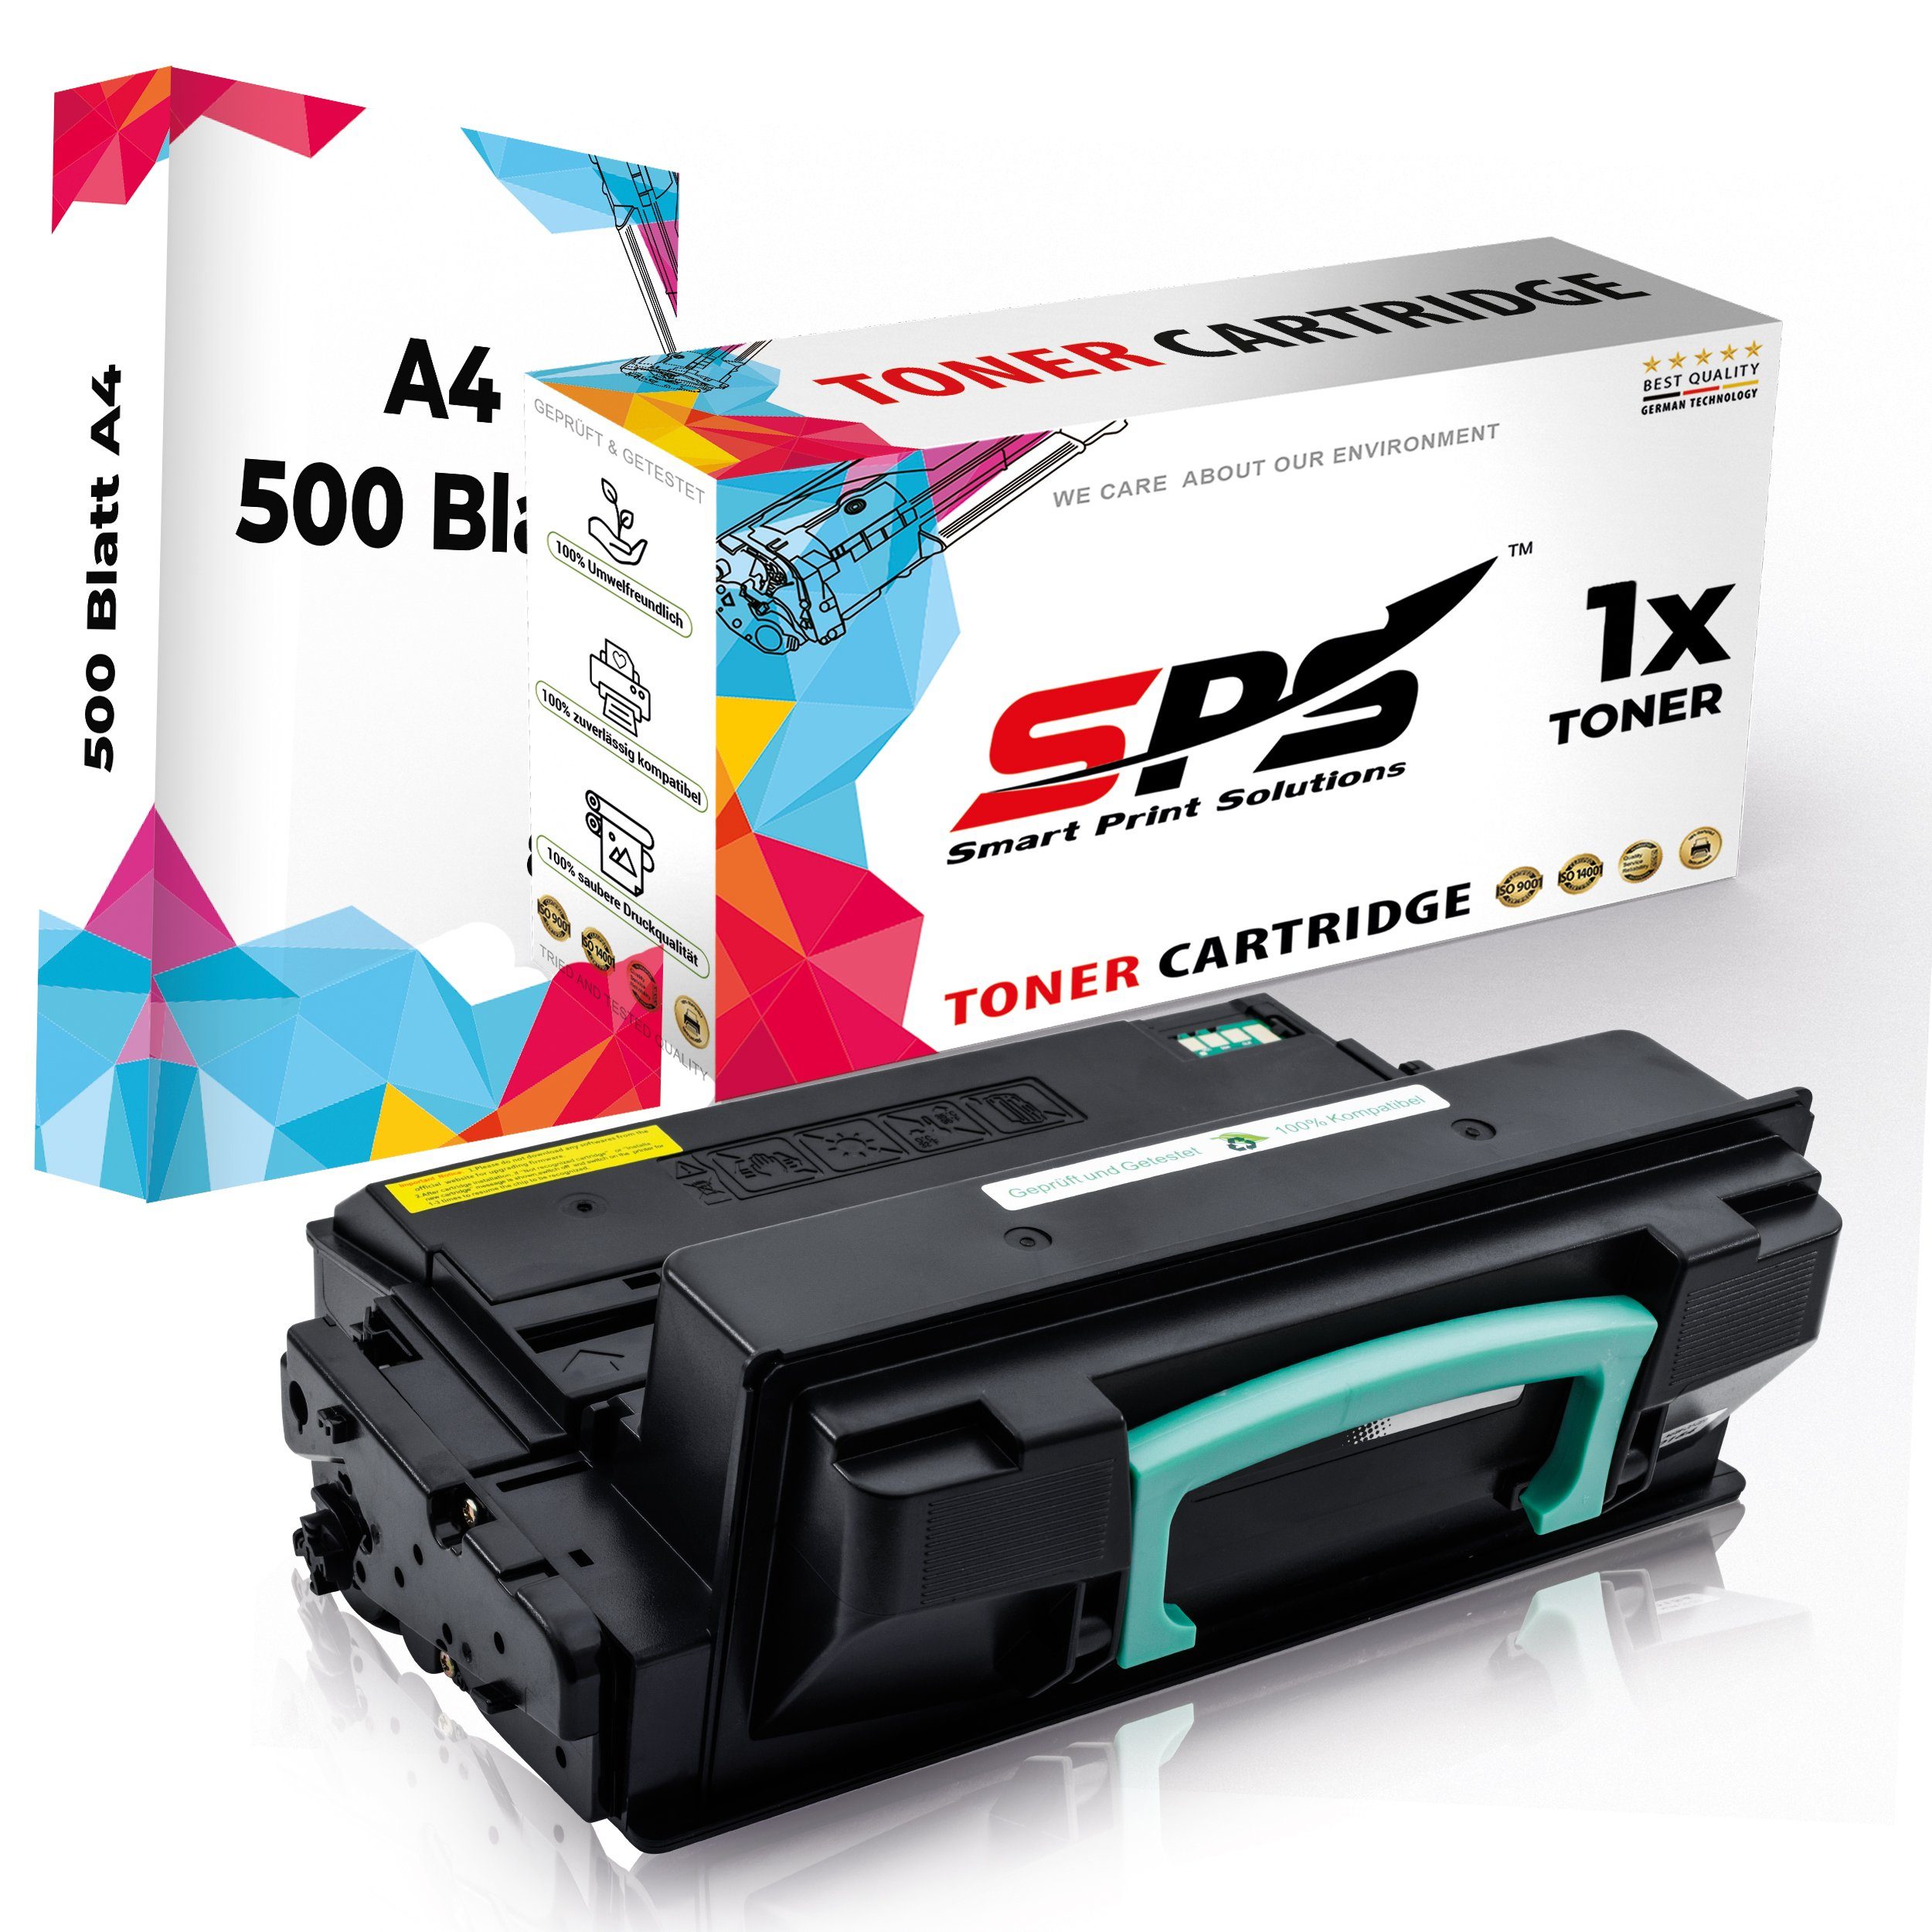 SPS Tonerkartusche Kompatibel für Samsung Xpress M4020D 203L MLT-D203, (1er Pack + A4 Papier, 1x Schwarz Toner) | Tonerpatronen